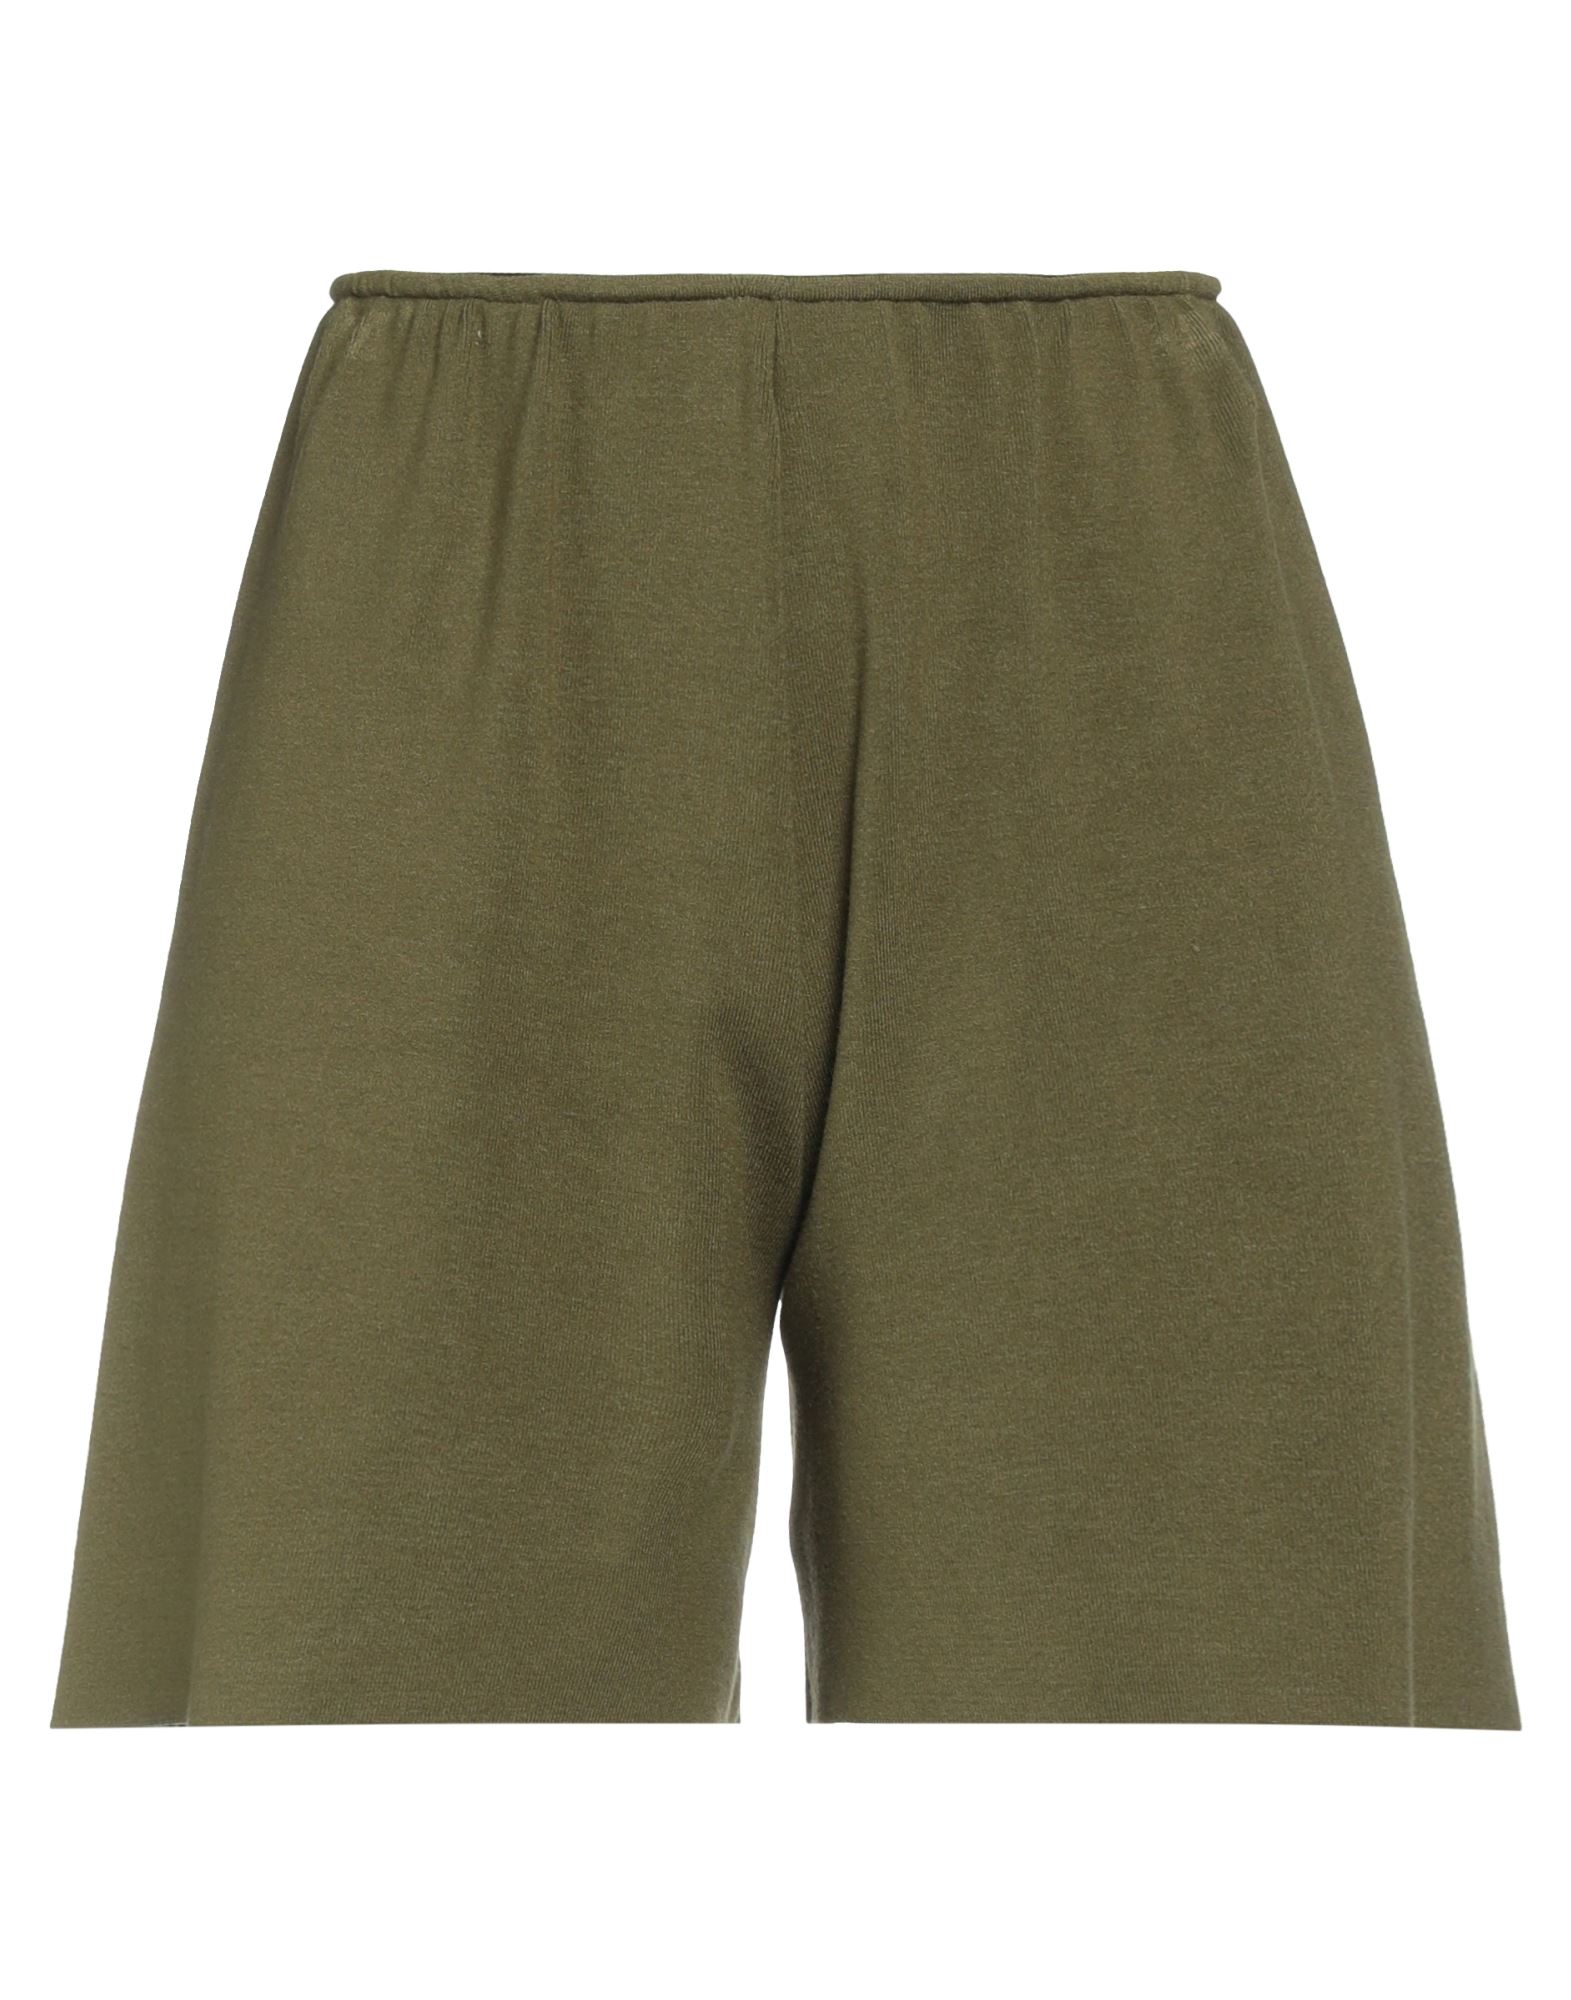 Kaos Woman Shorts & Bermuda Shorts Military Green Size S Viscose, Polyester